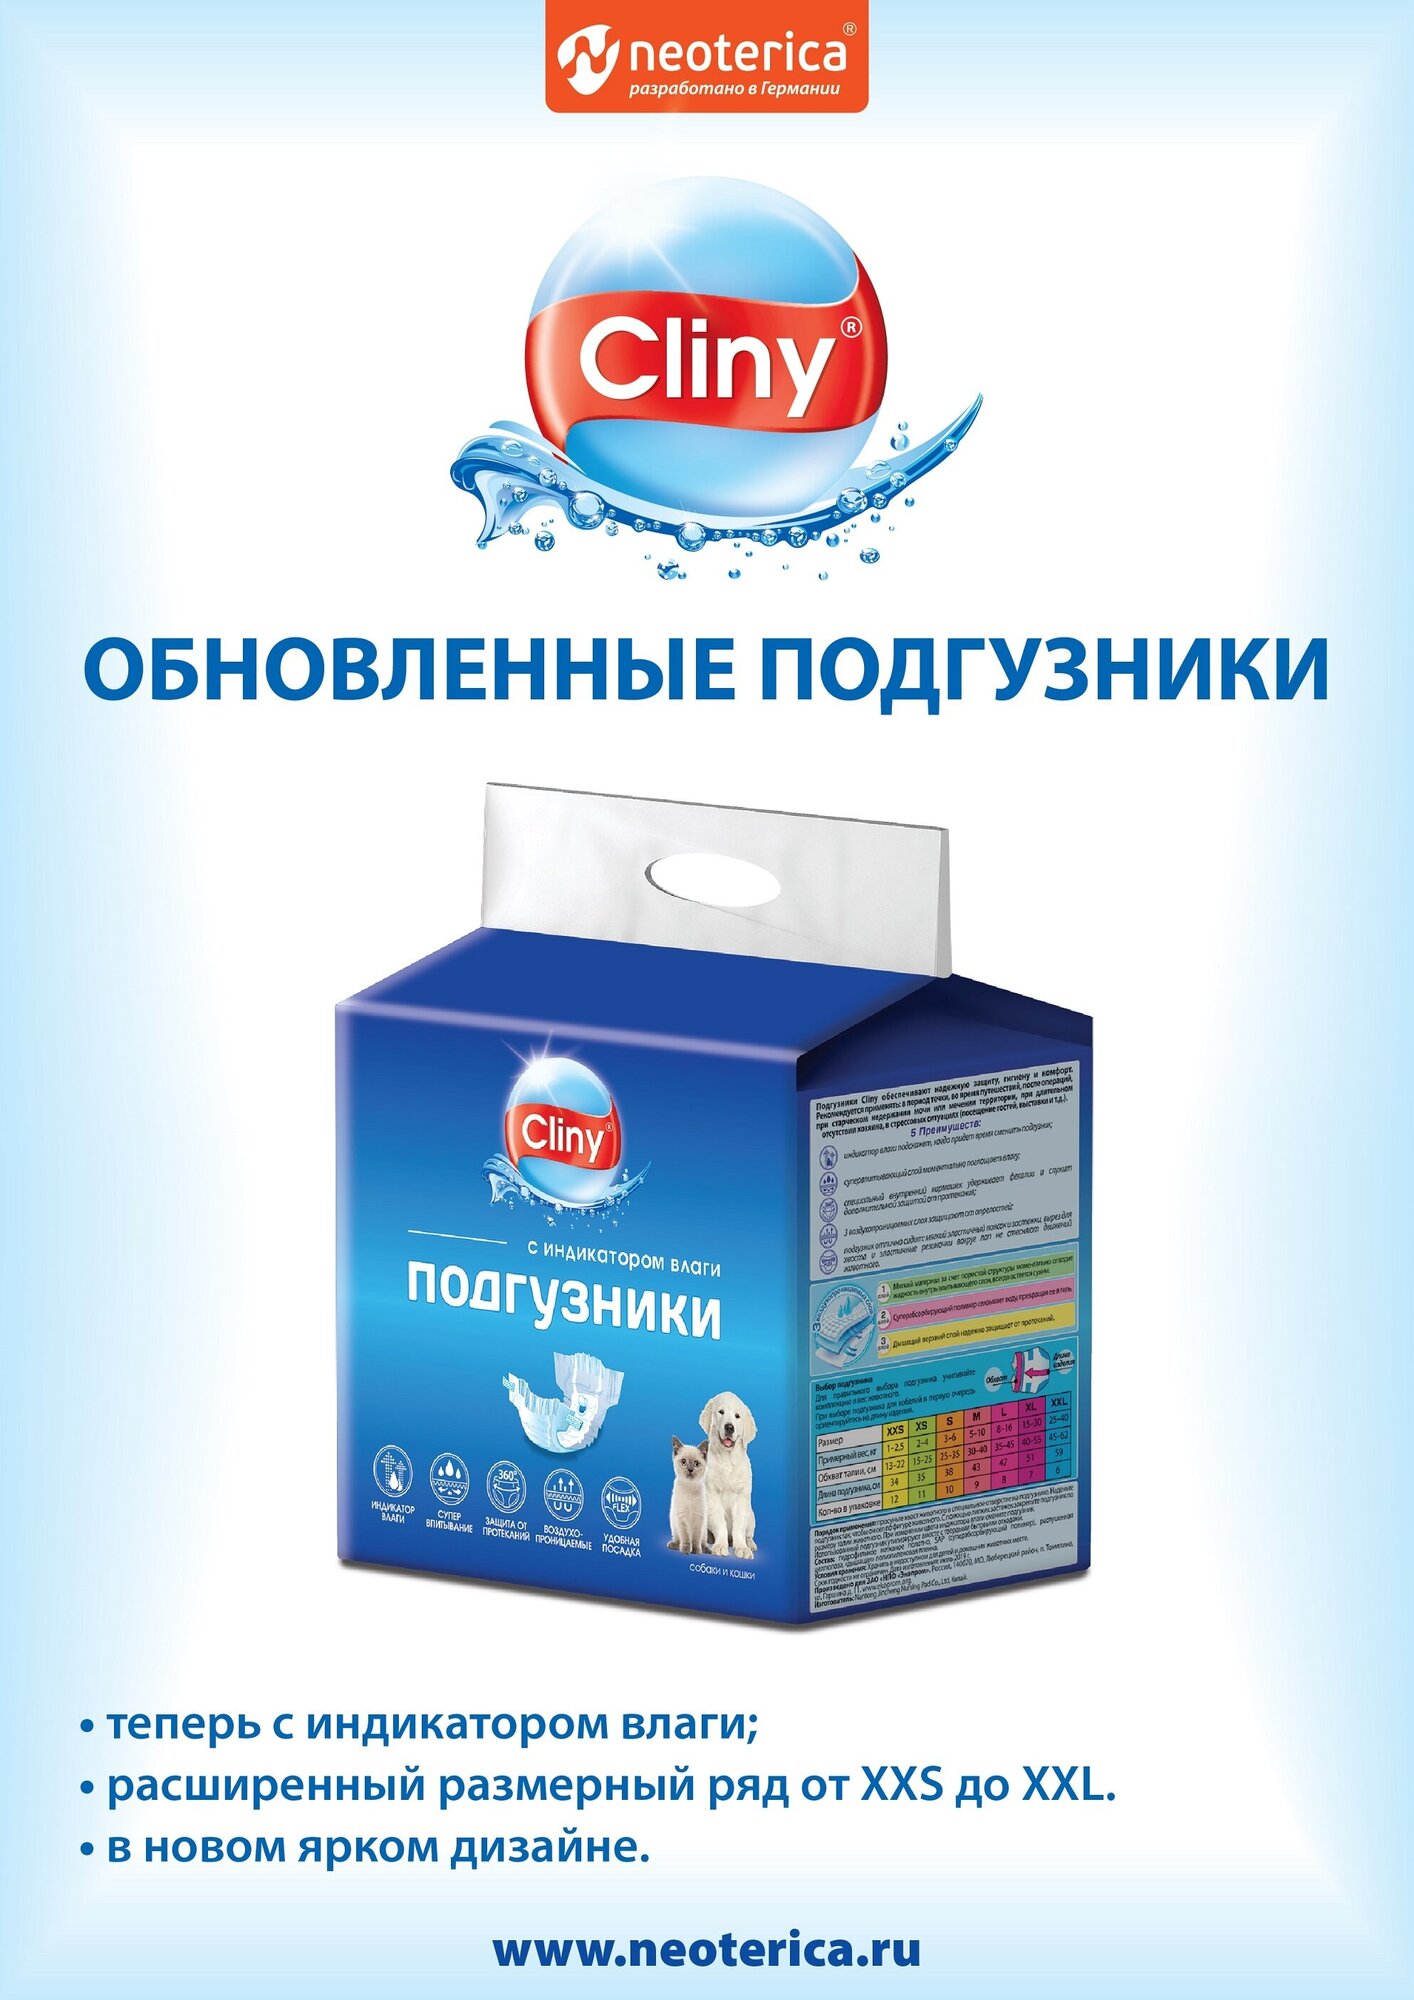 Cliny Подгузники для собак и кошек 25-40 кг размер XXL 6 шт